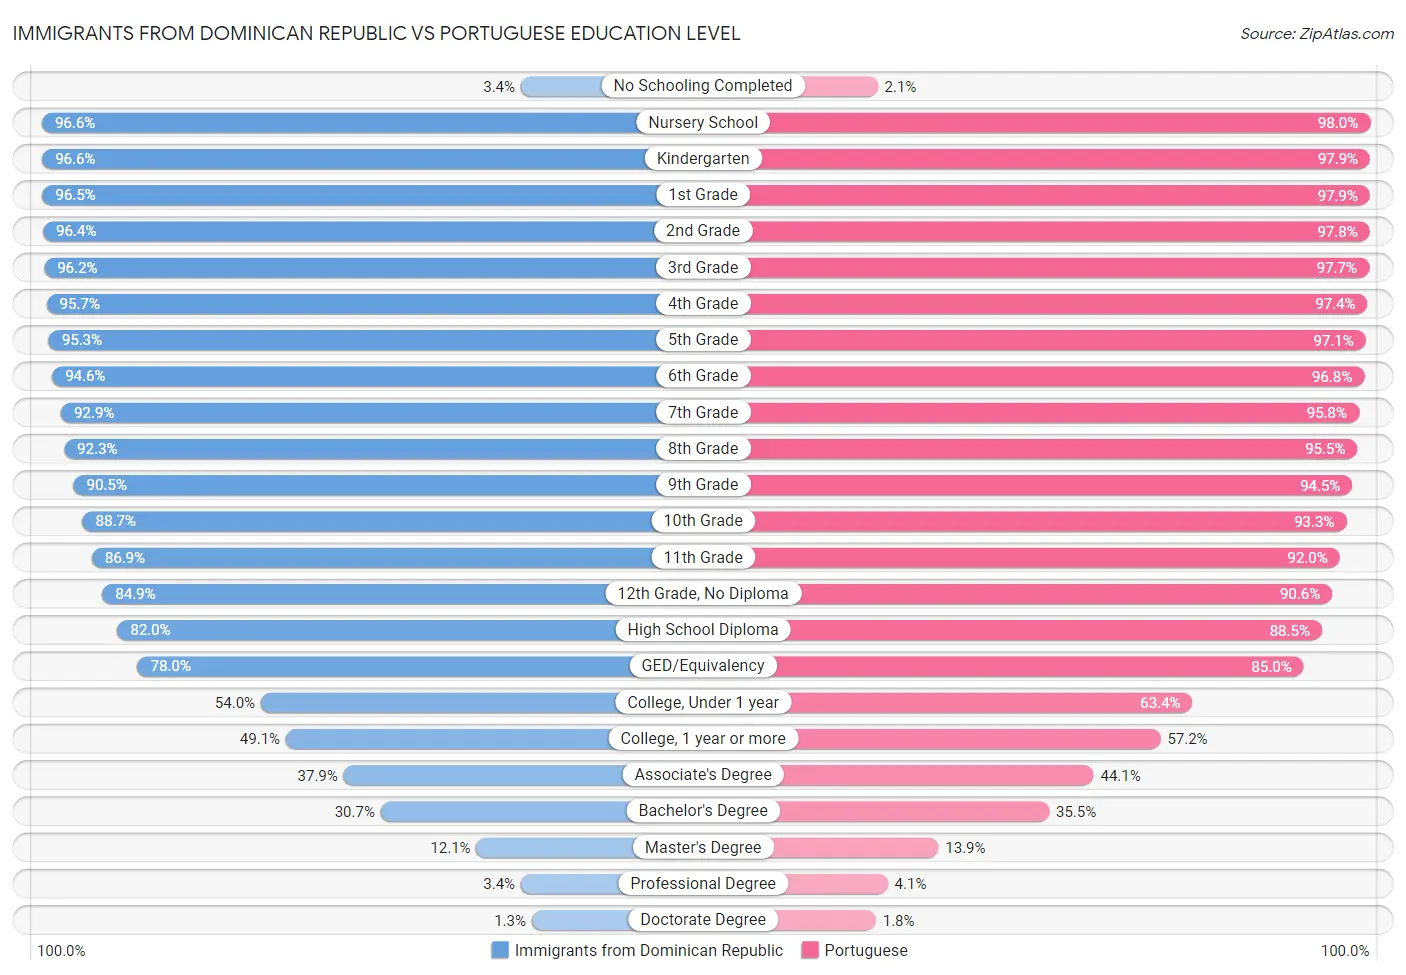 Immigrants from Dominican Republic vs Portuguese Education Level